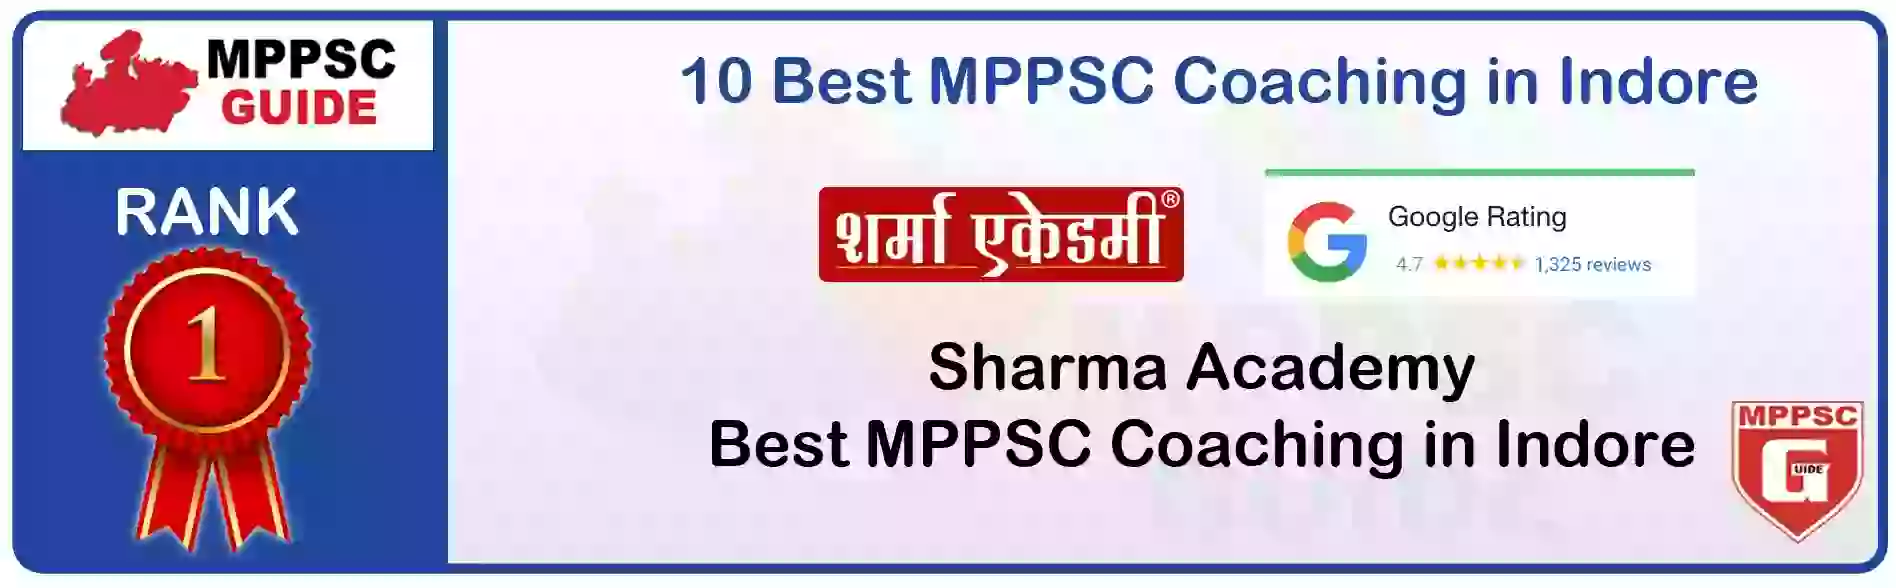 MPPSC Coaching in Khargone, MPPSC Coaching Institute In Khargone, Best MPPSC Coaching in Khargone, Top 10 MPPSC Coaching In Khargone, best mppsc coaching institute in khargone, MPPSC Coaching Classes In Khargone, MPPSC Online Coaching In Khargone, mppsc coaching in Khargone bhanwarkua